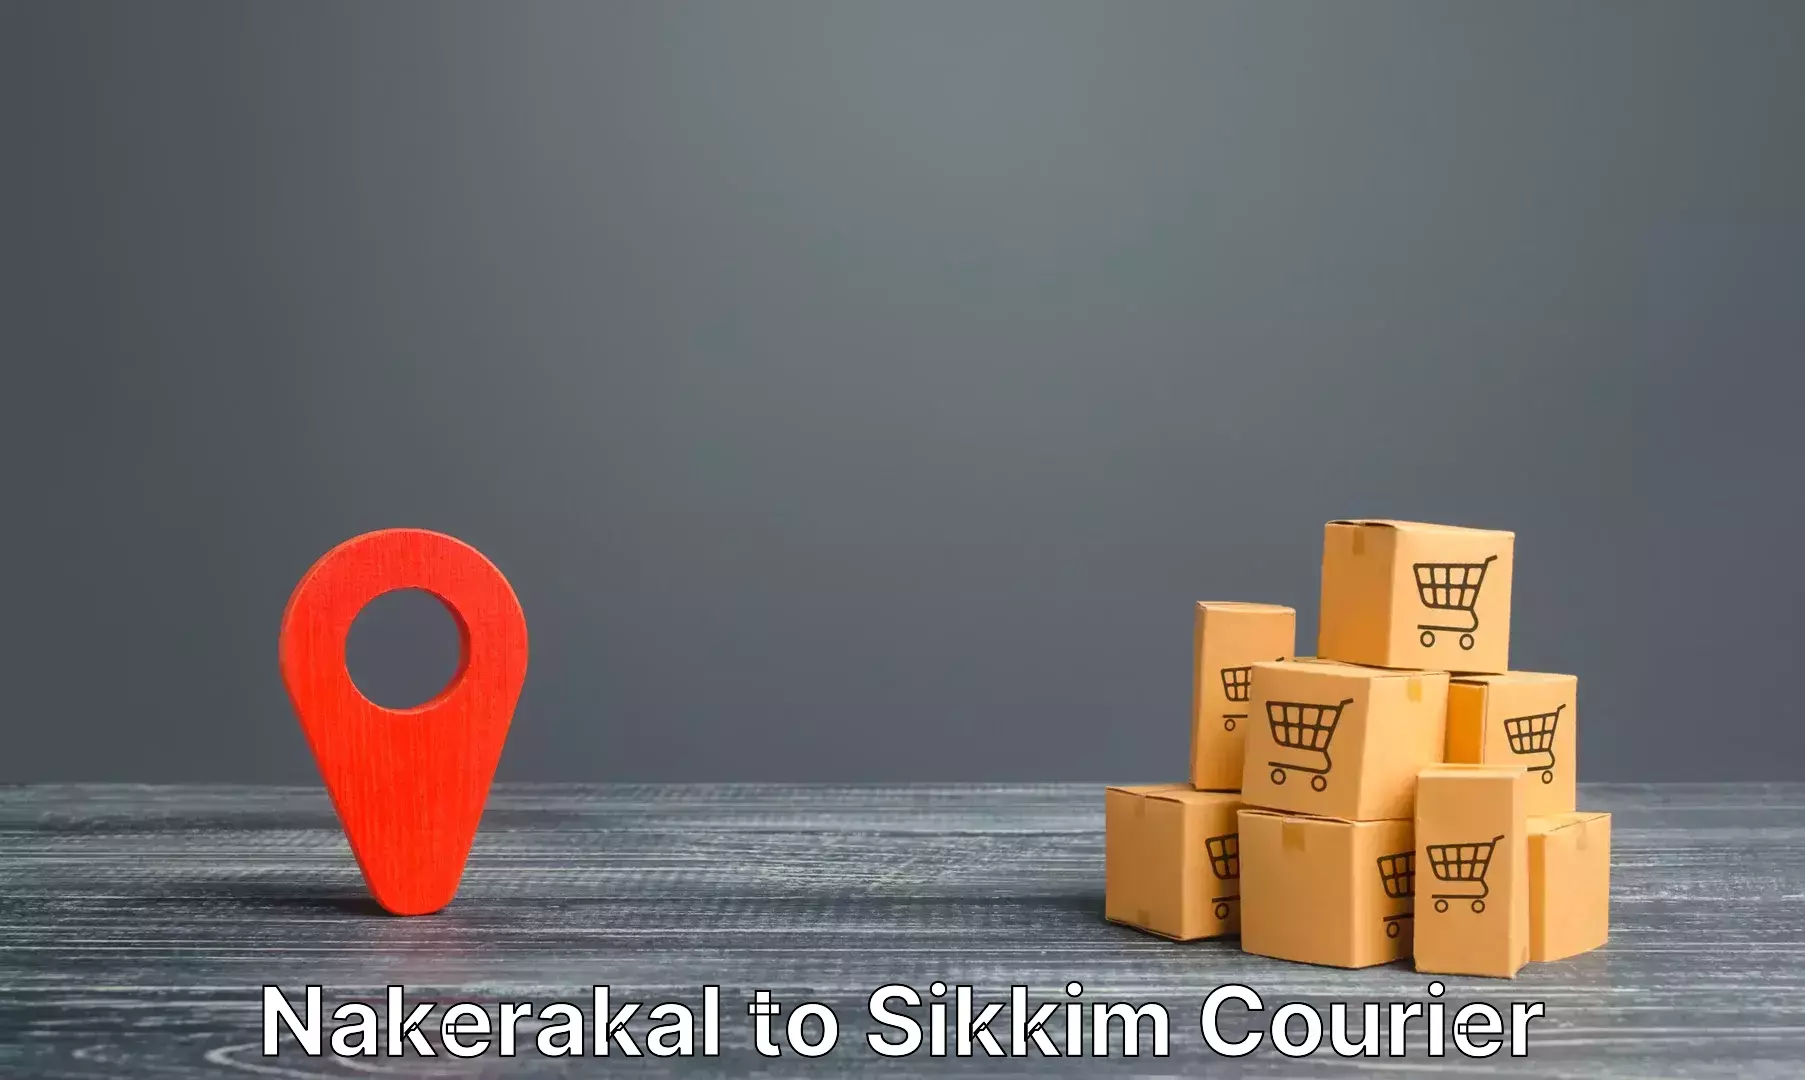 Hassle-free luggage shipping Nakerakal to Sikkim